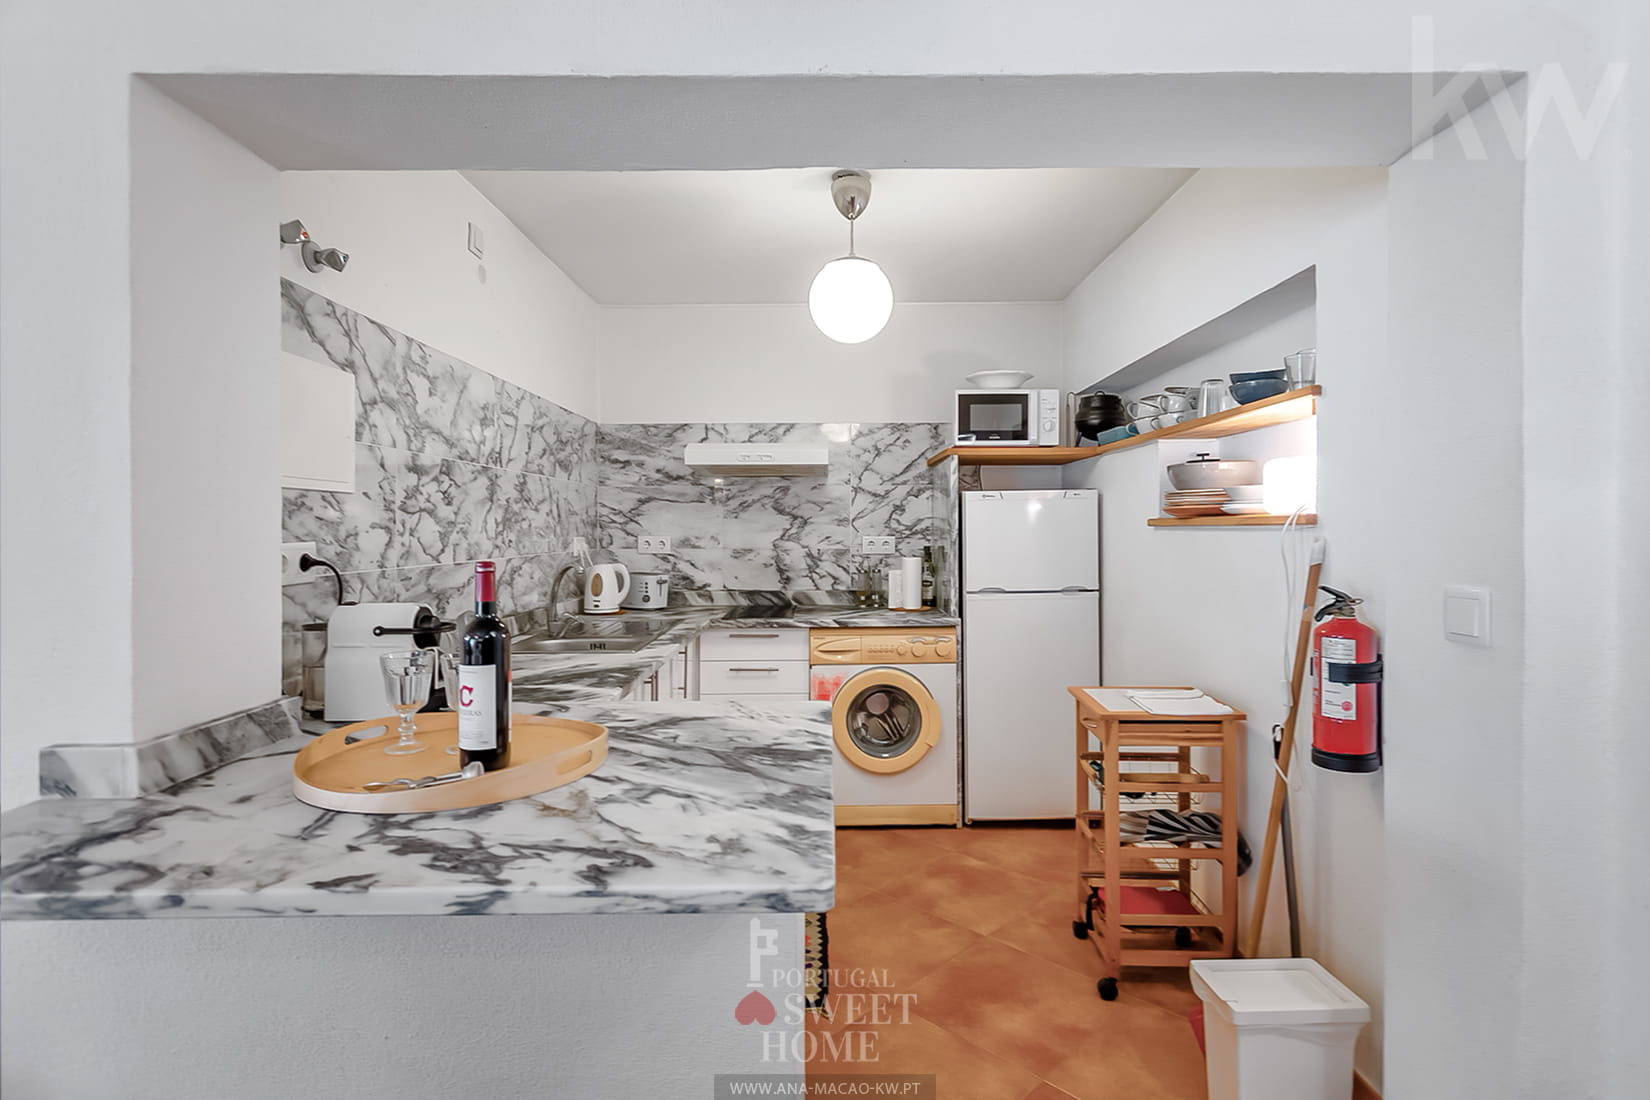 Cozinha (6,27 m²) aberta para a salão do apartamento independente, totalmente equipada